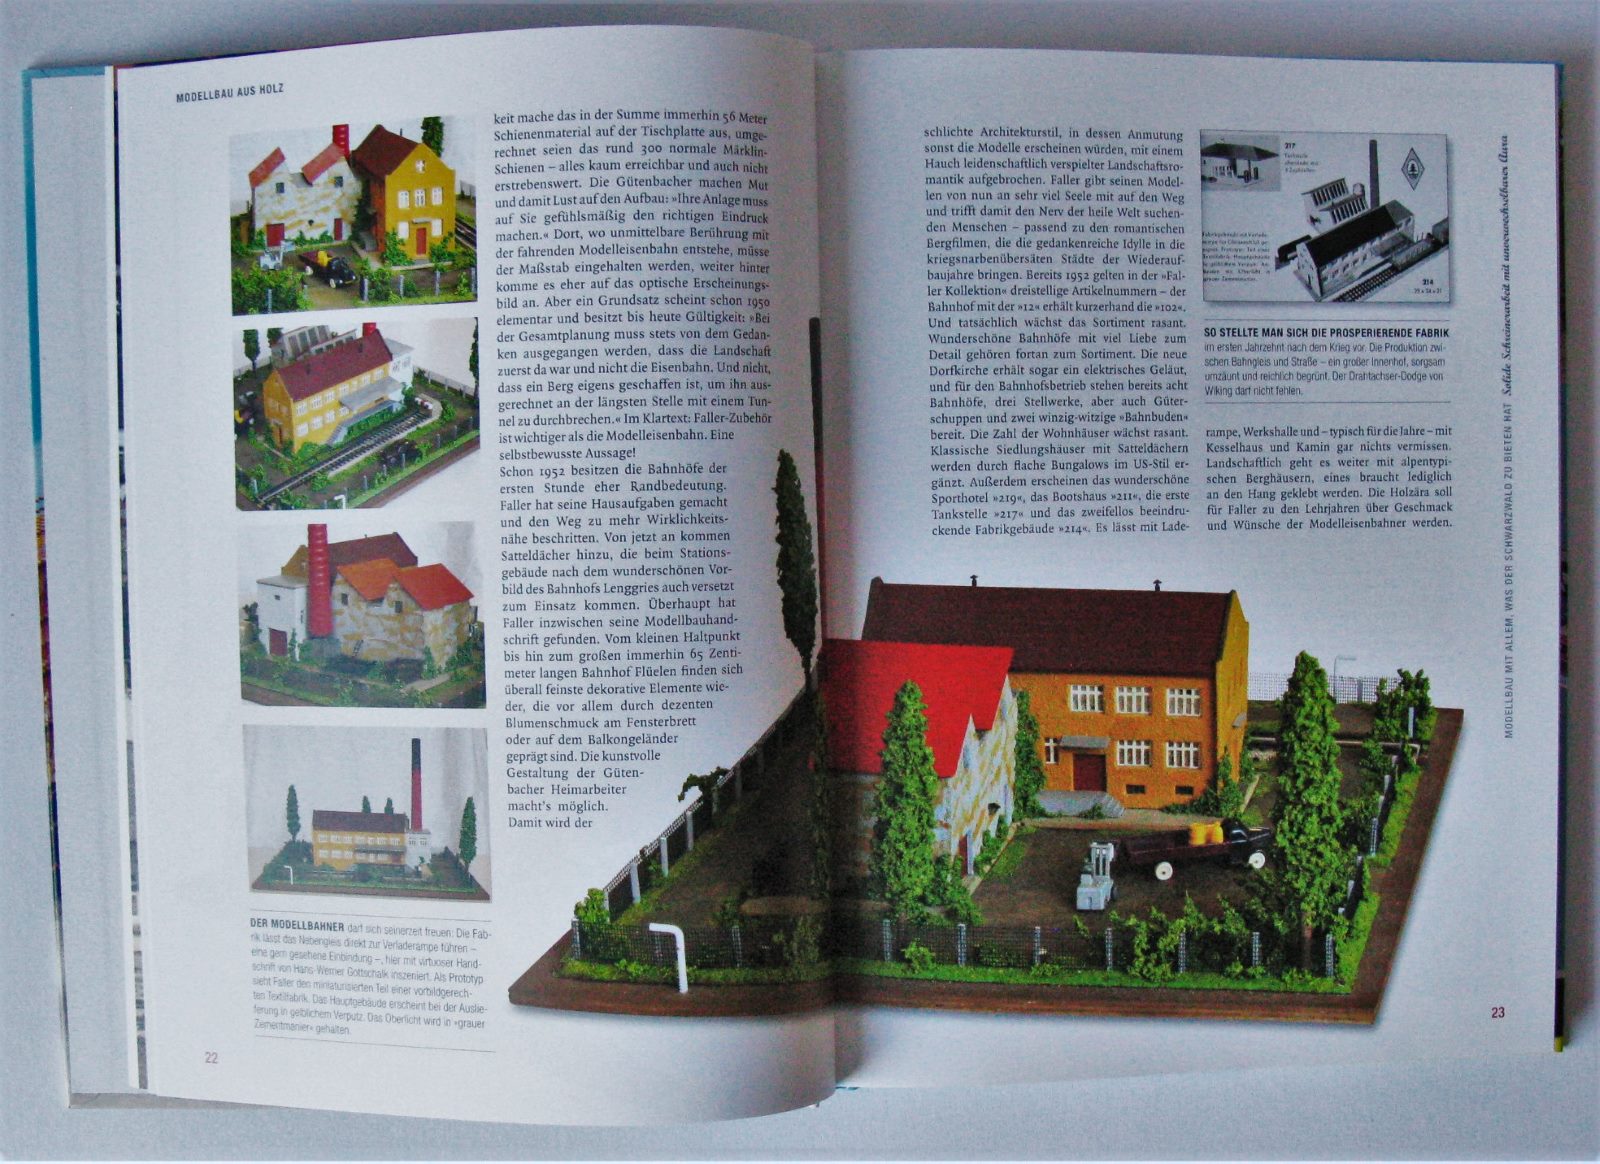 FALLER die Welt von oben MODELLBAU Firmengeschichte Bausätze Häuser Buch Modelle 